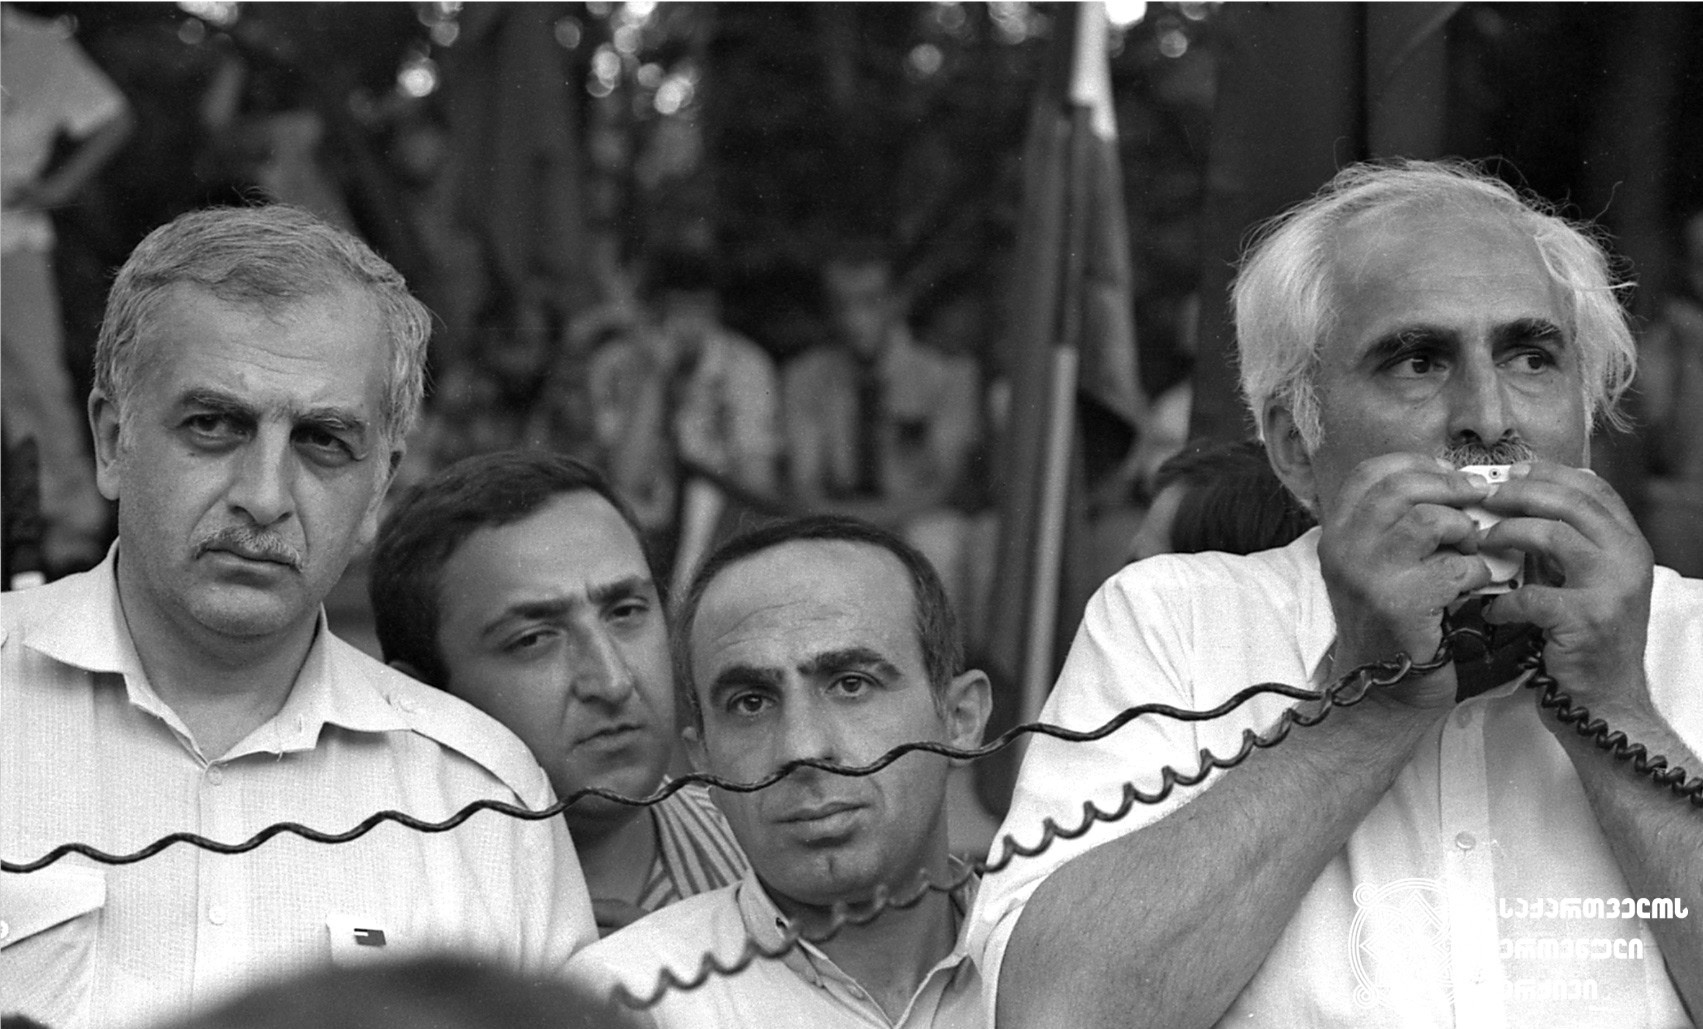 მერაბ კოსტავა და ზვიად გამსახურდია საქართველოს დამოუკიდებლობის მოთხოვნით გამართულ მიტინგზე. თბილისი, 1989 წელი
<br>
Merab Kostava and Zviad Gamsakhurdia attending a demonstration demanding the independence of Georgia. Tbilisi, 1989